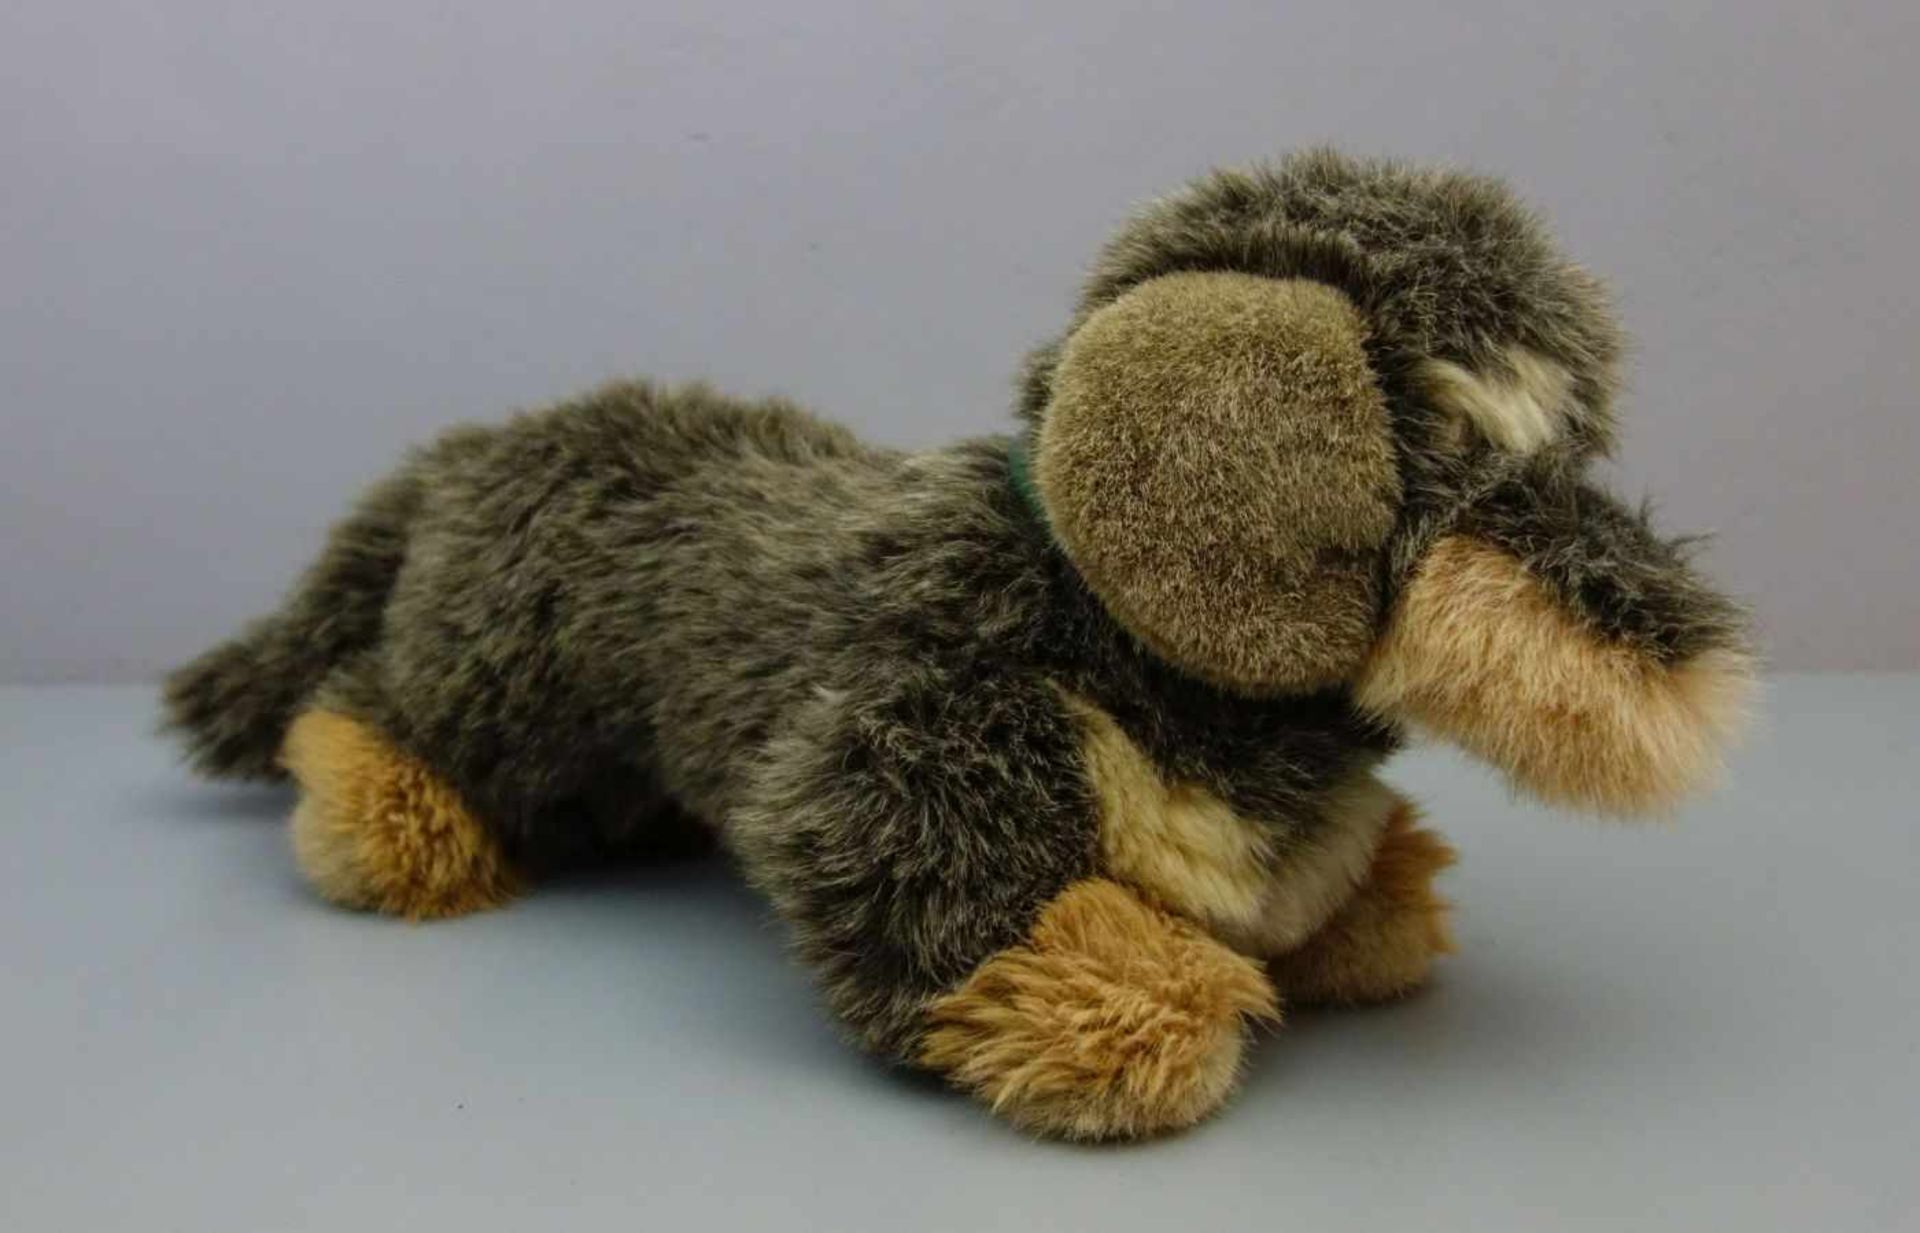 STEIFF - TIER "Dackel" / "Rauhaardackel", fluffy toy, mit "Knopf im Ohr" und Manufakturfahne. - Bild 3 aus 5